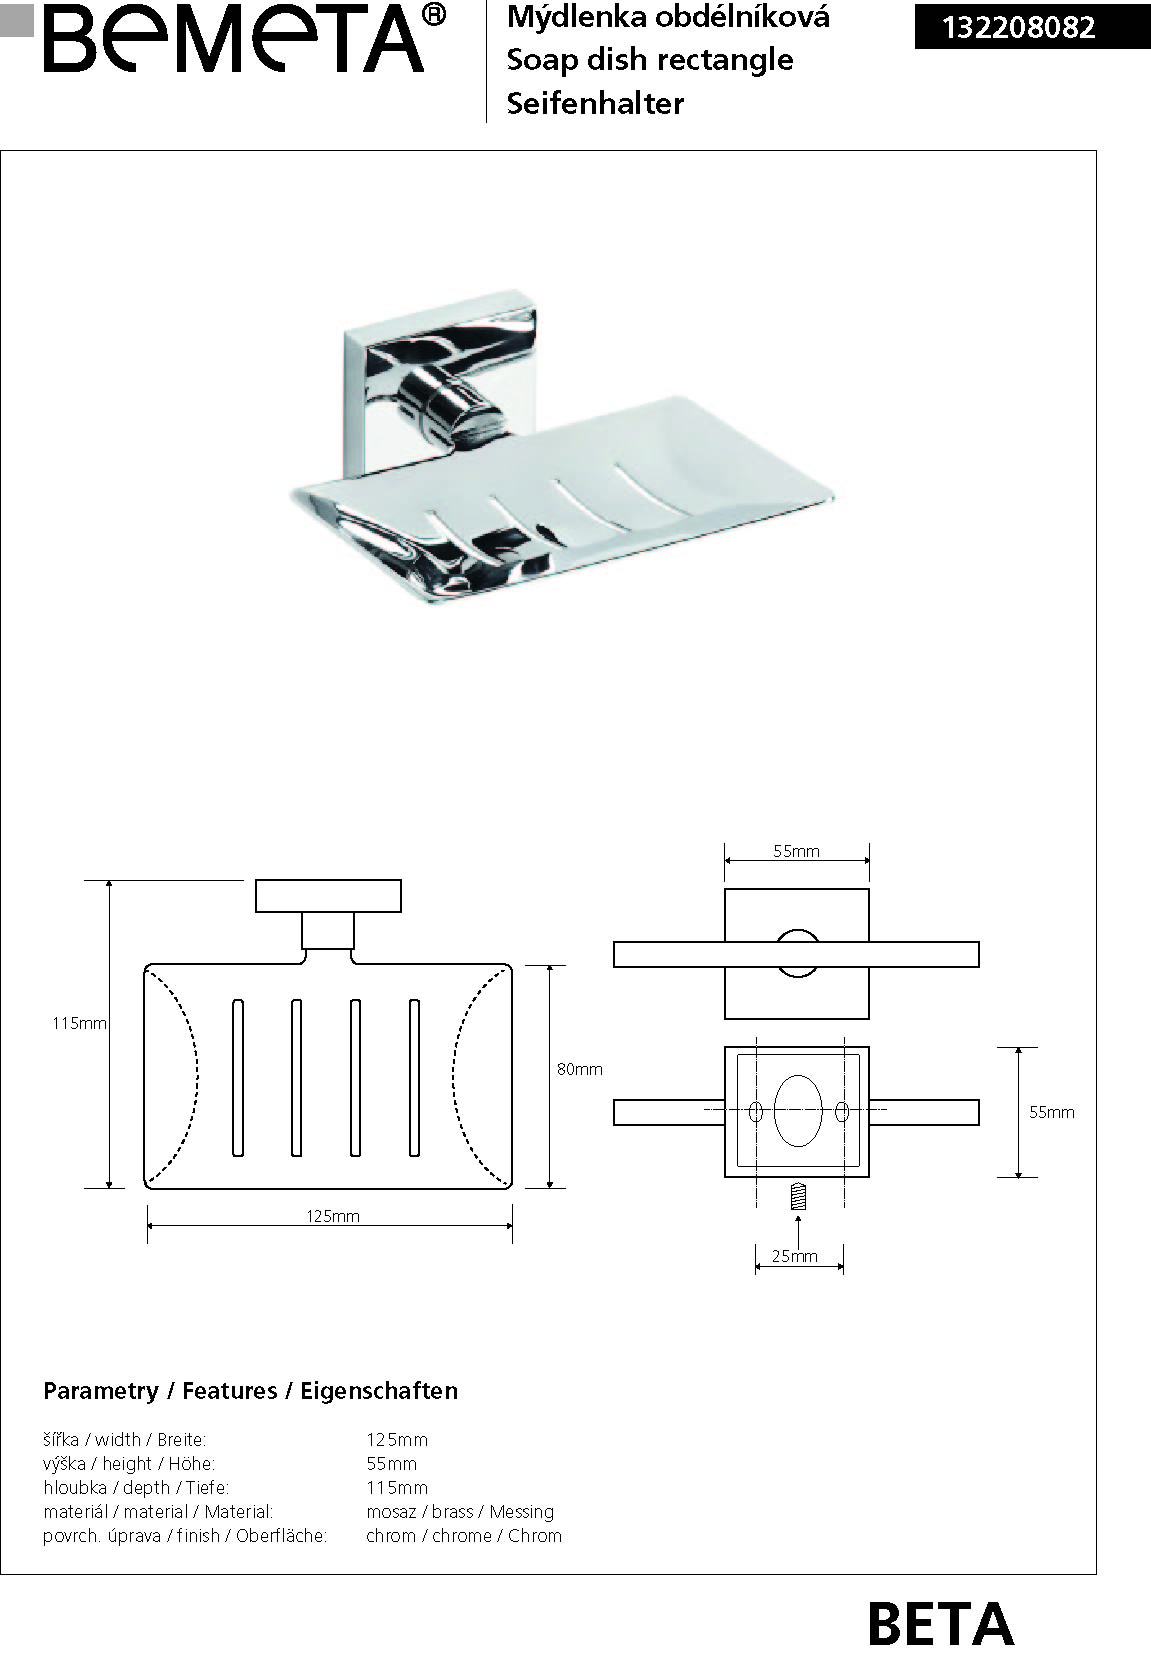 Porte-savon rectangulaire en chrome BETA 12,5cmx5,5cmx11,5cm clicktofournisseur.com